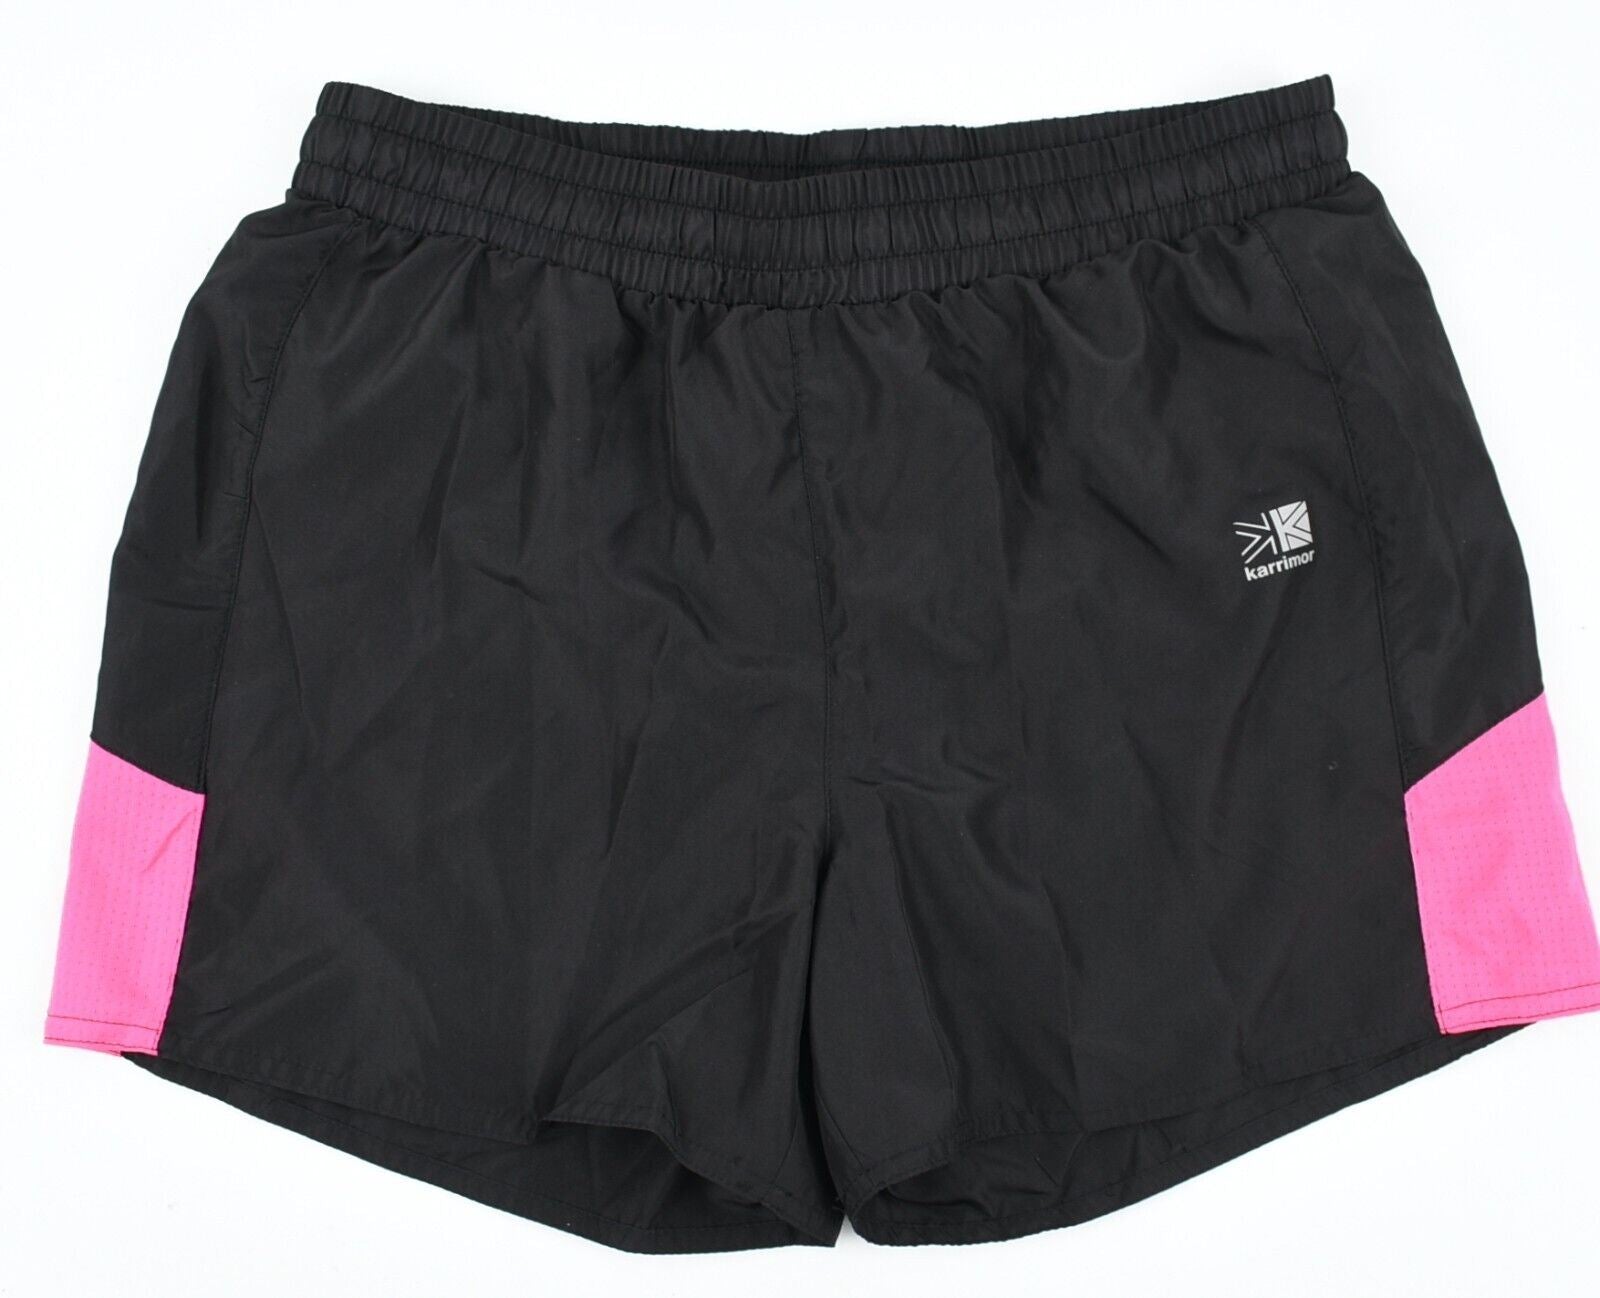 KARRIMOR Womens Running Shorts /Gym /Workout, Black/Pink, size L /UK 14